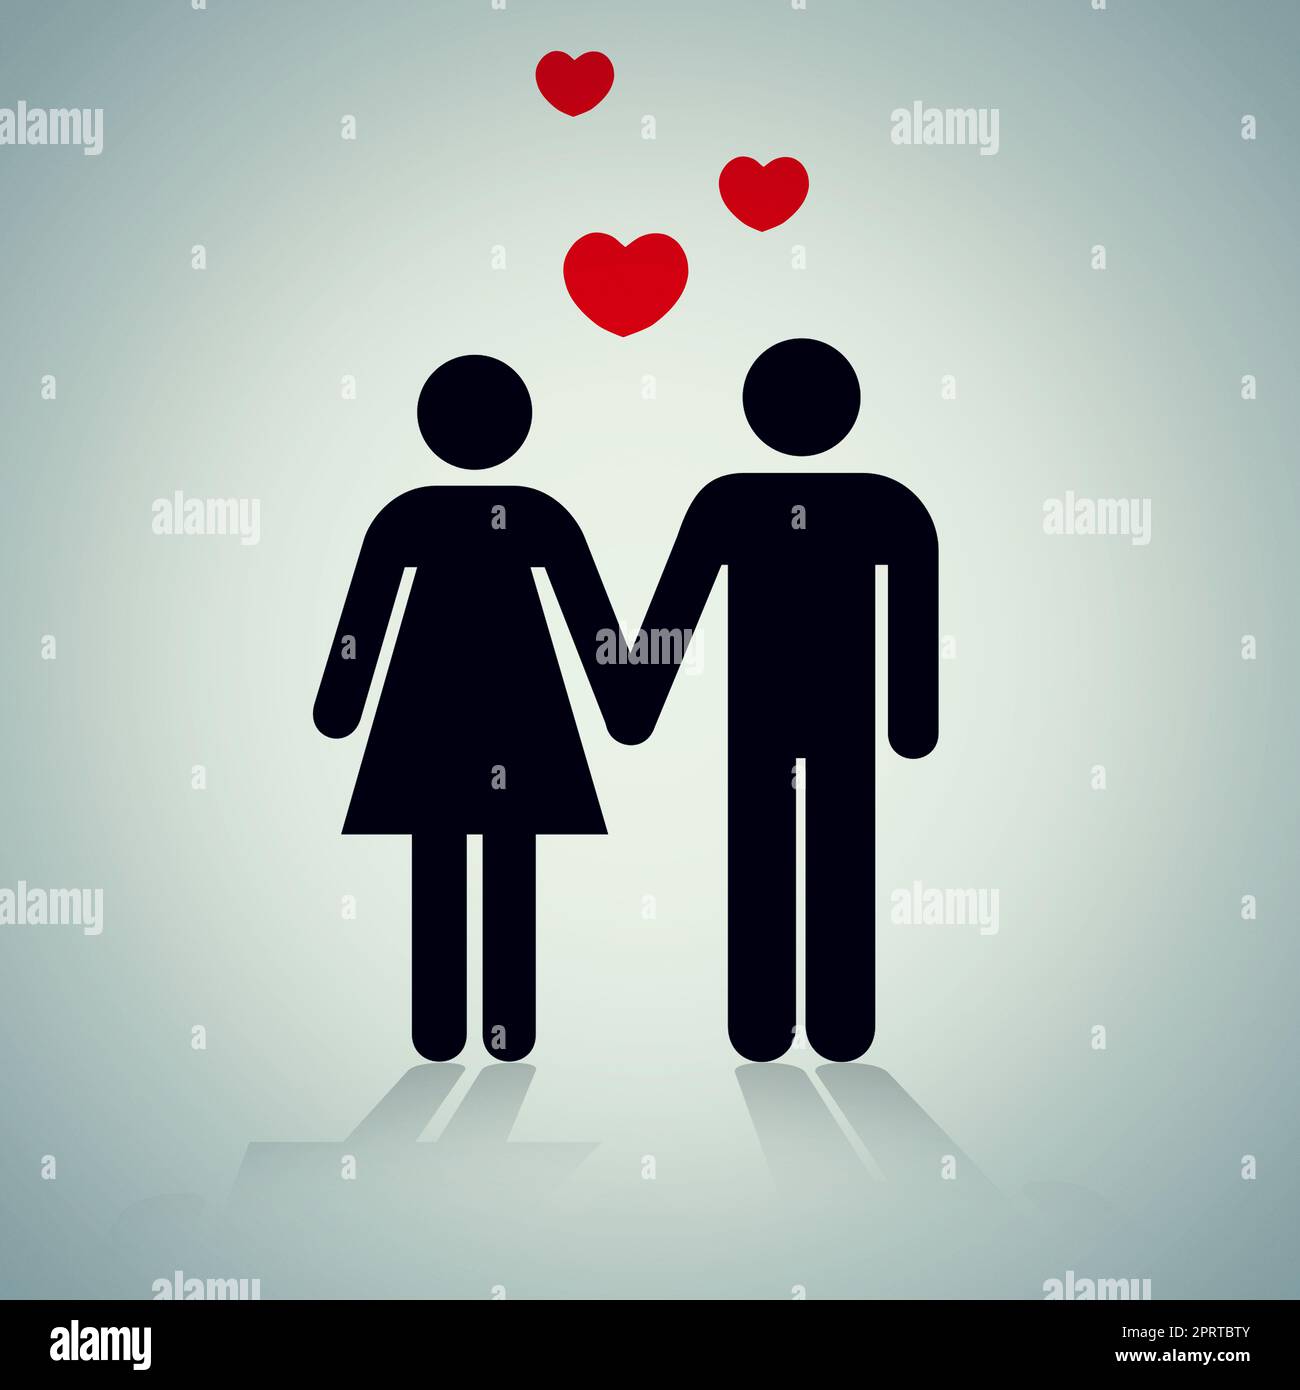 Verbindungen herstellen. Eine grafische Darstellung eines Paares, das die Hände hält. Stockfoto